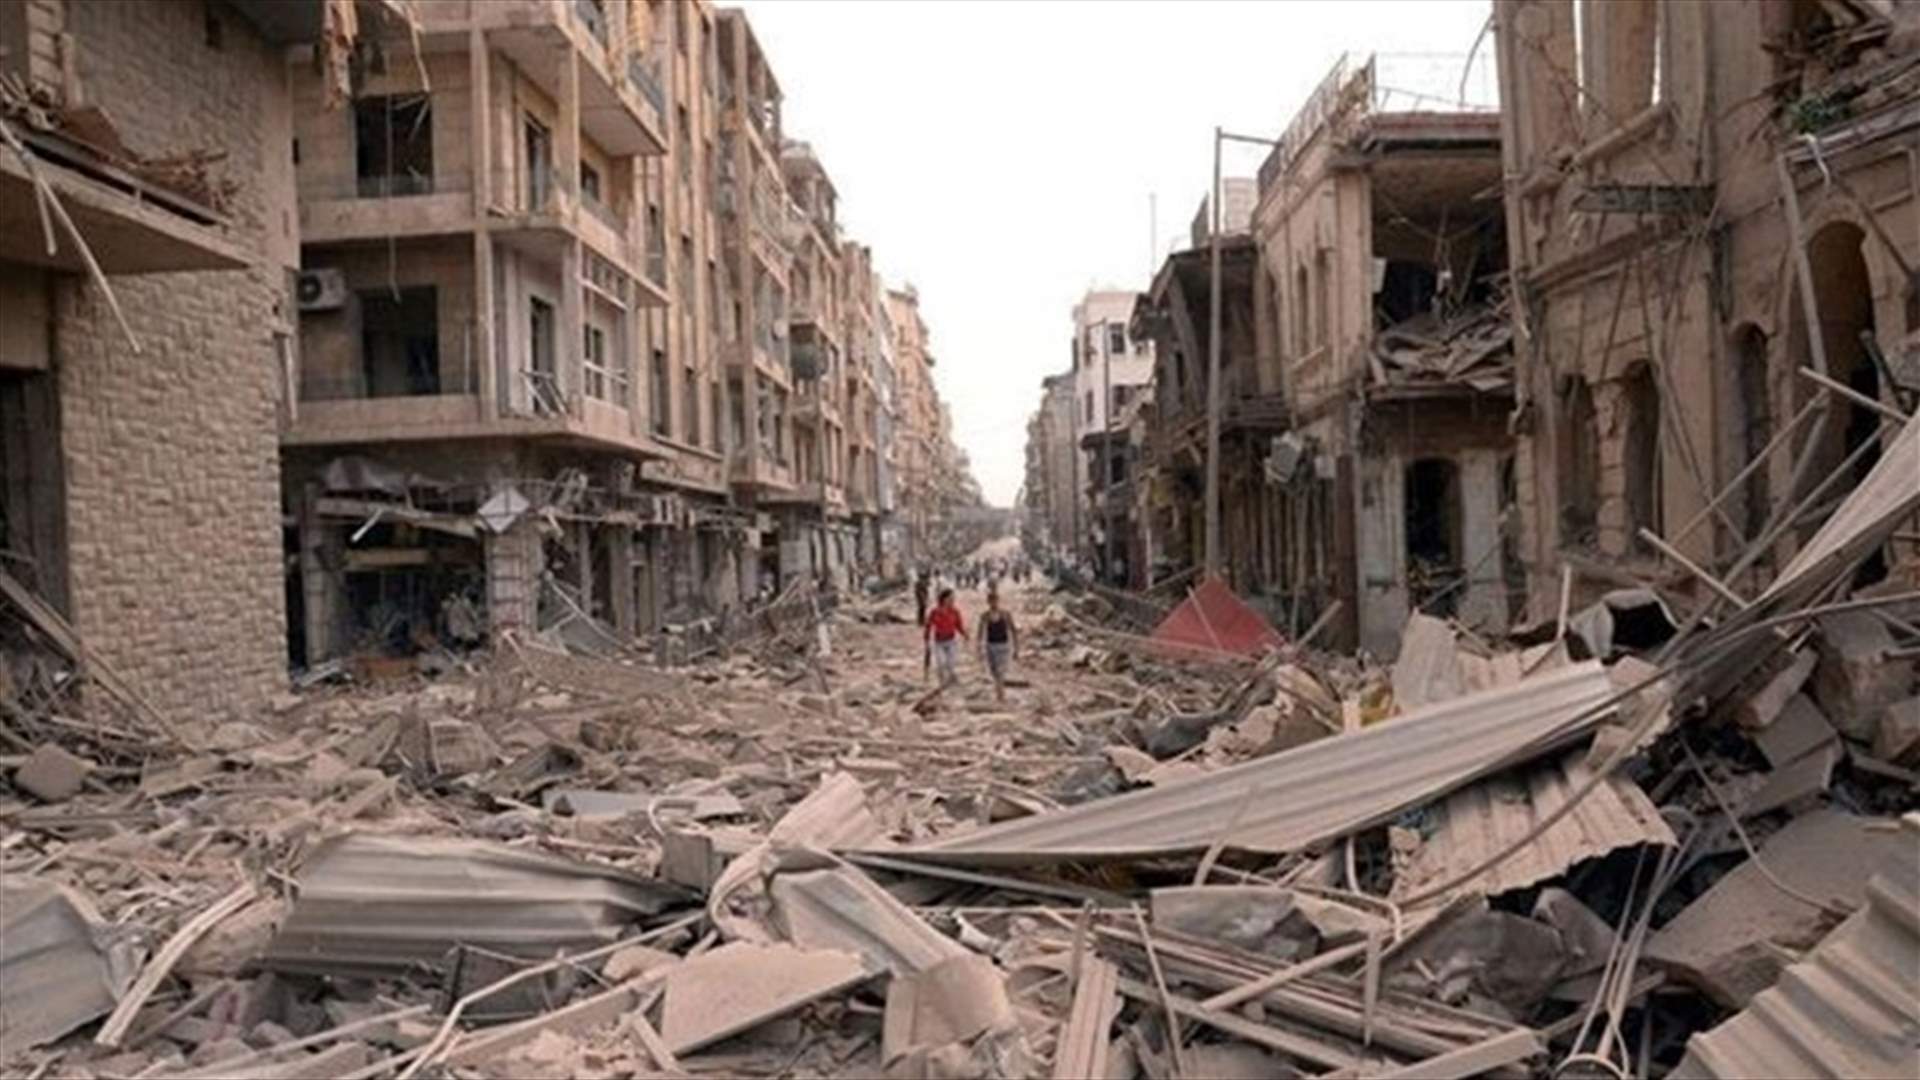  مؤشرات إيجابية في عملية السلام بسوريا